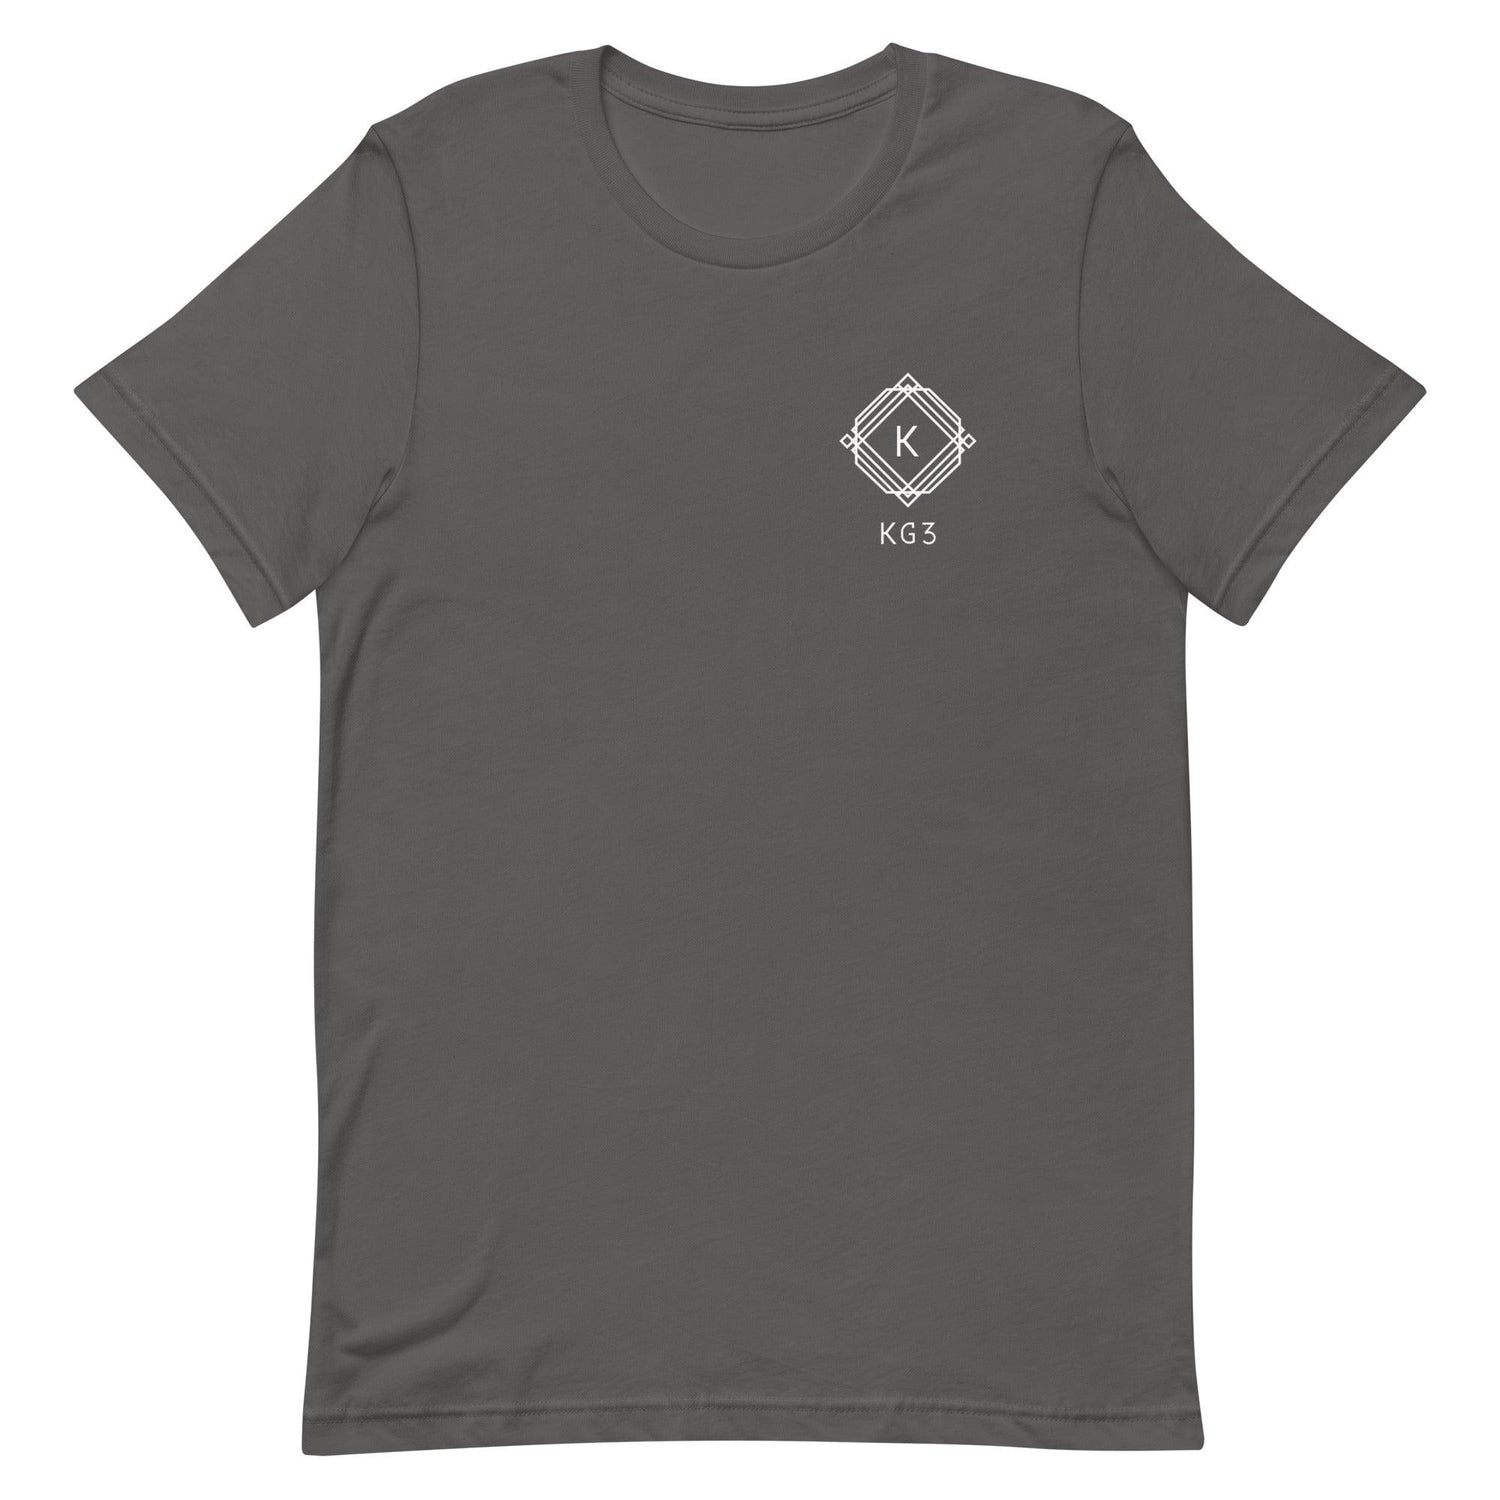 Kamonte Grimes "Kg3 Essential" t-shirt - Fan Arch